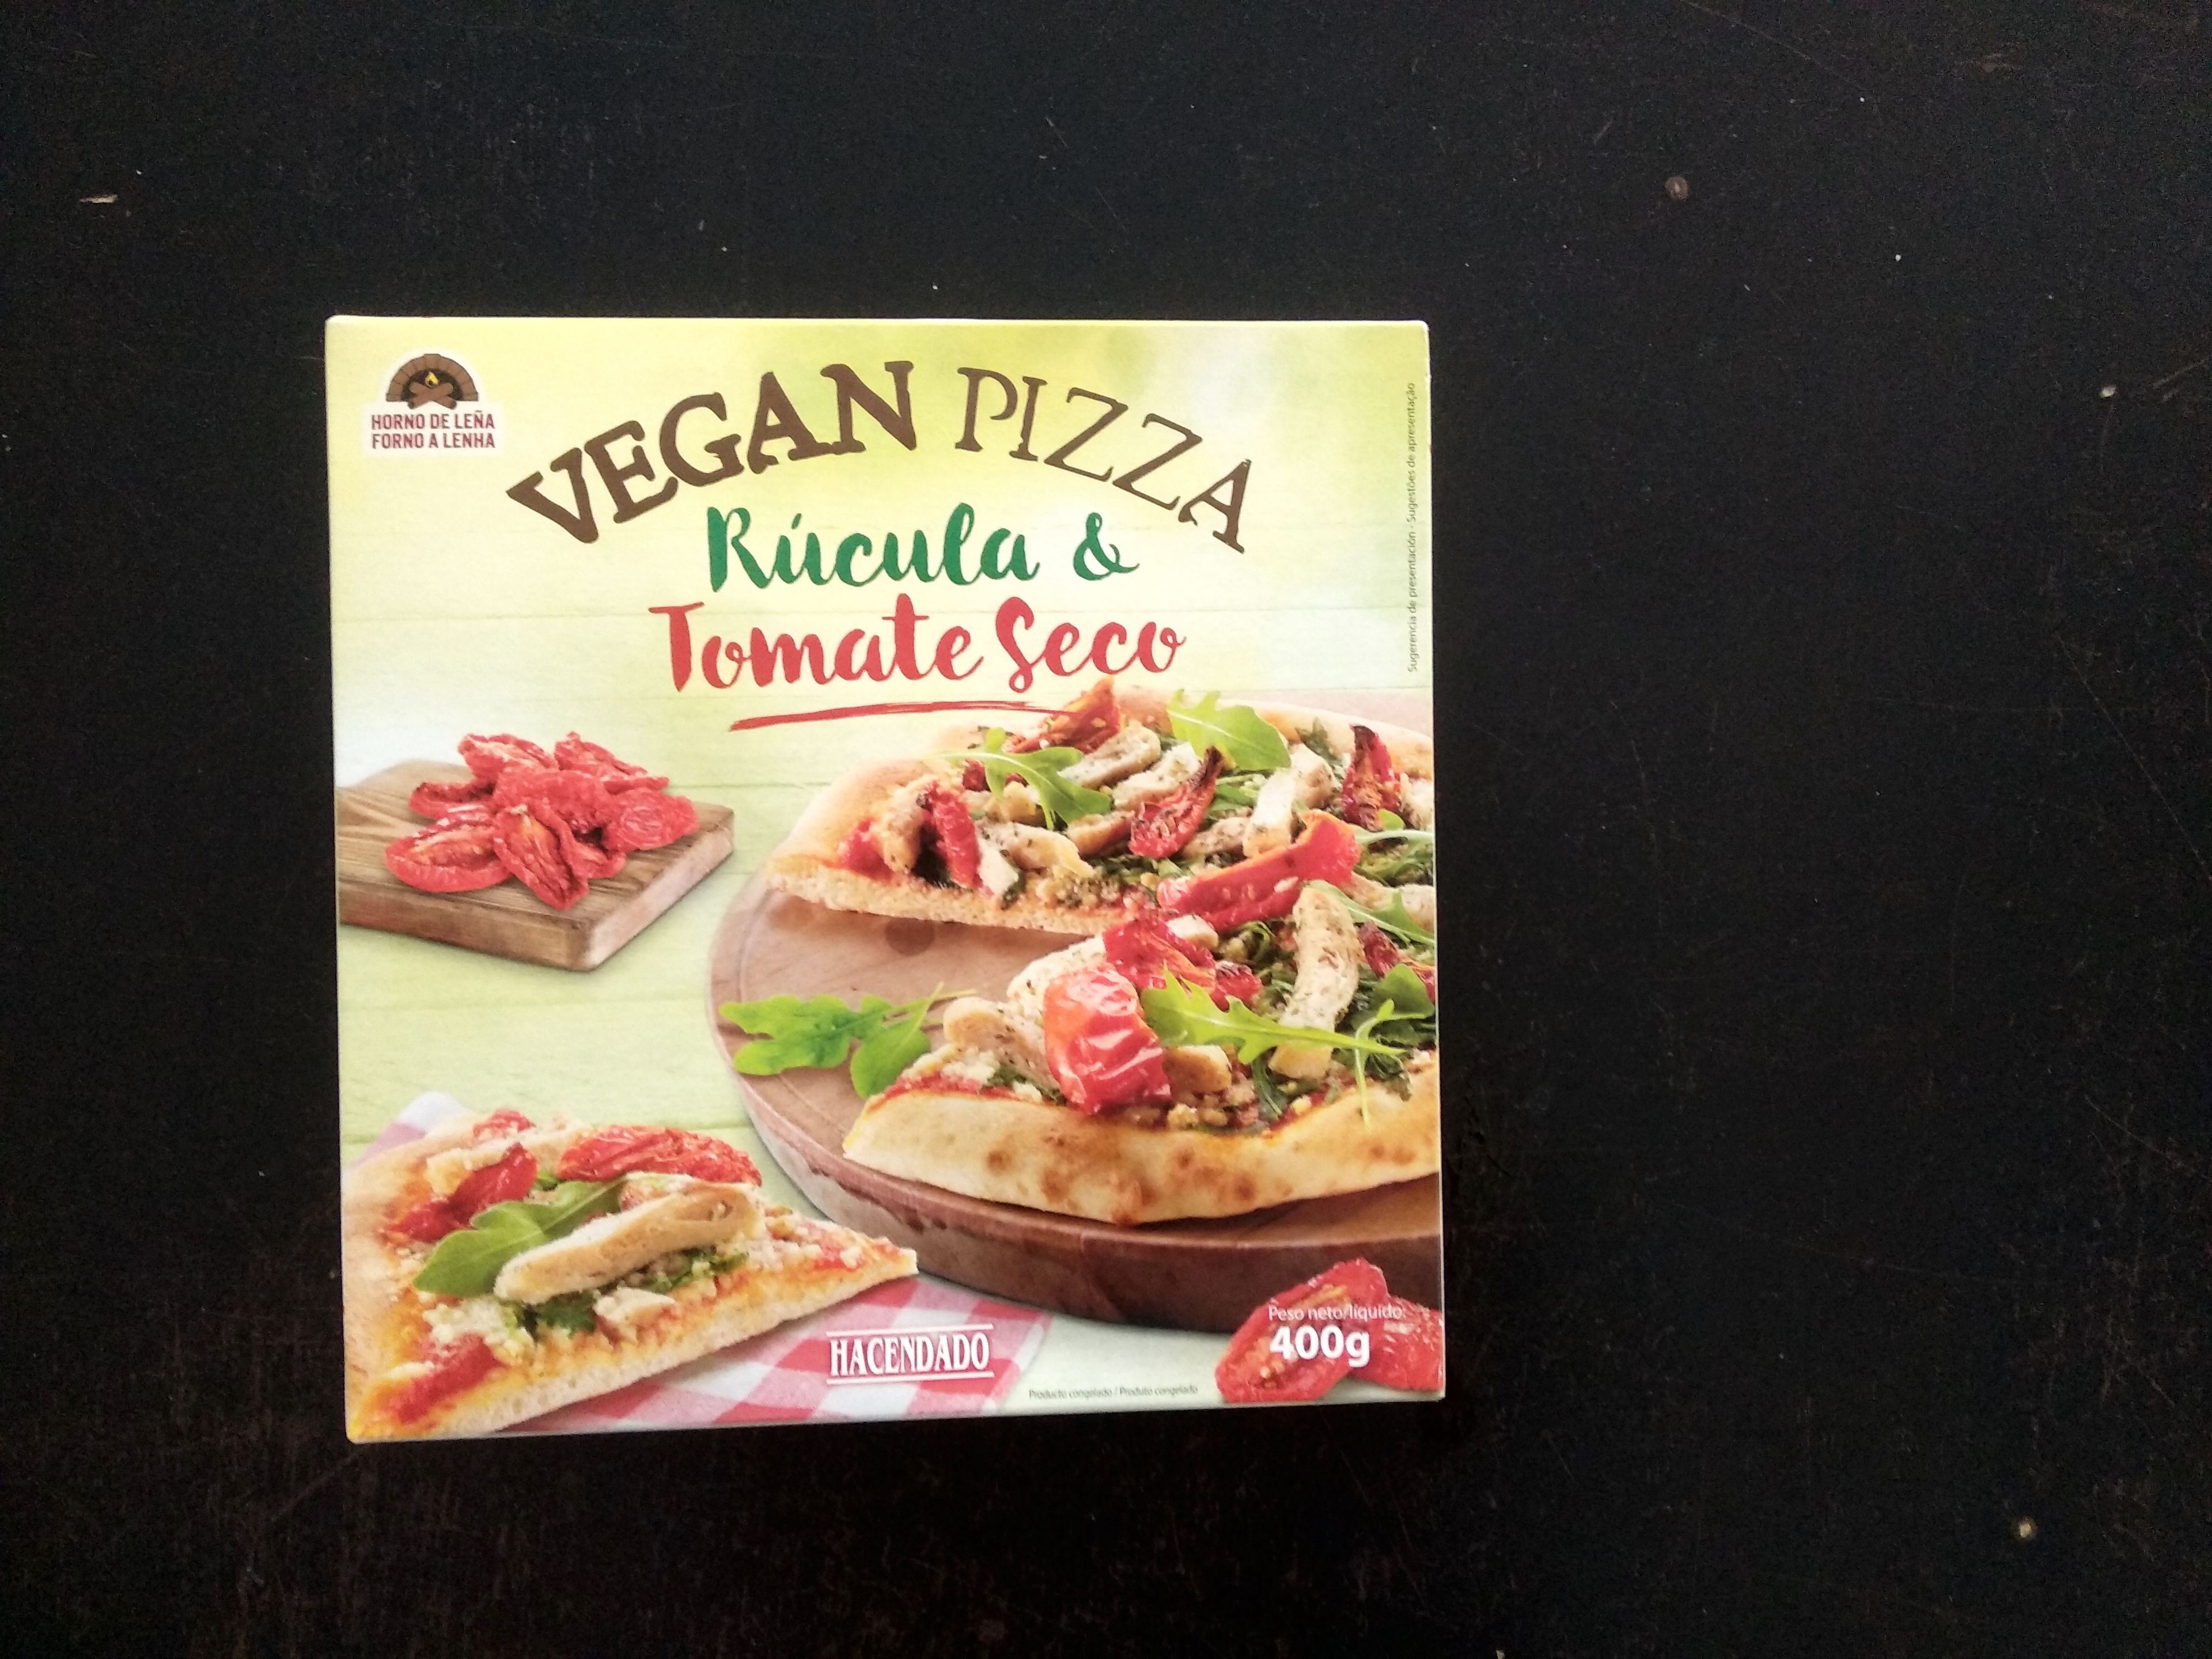 El packaging de la pizza vegana de Mercadona